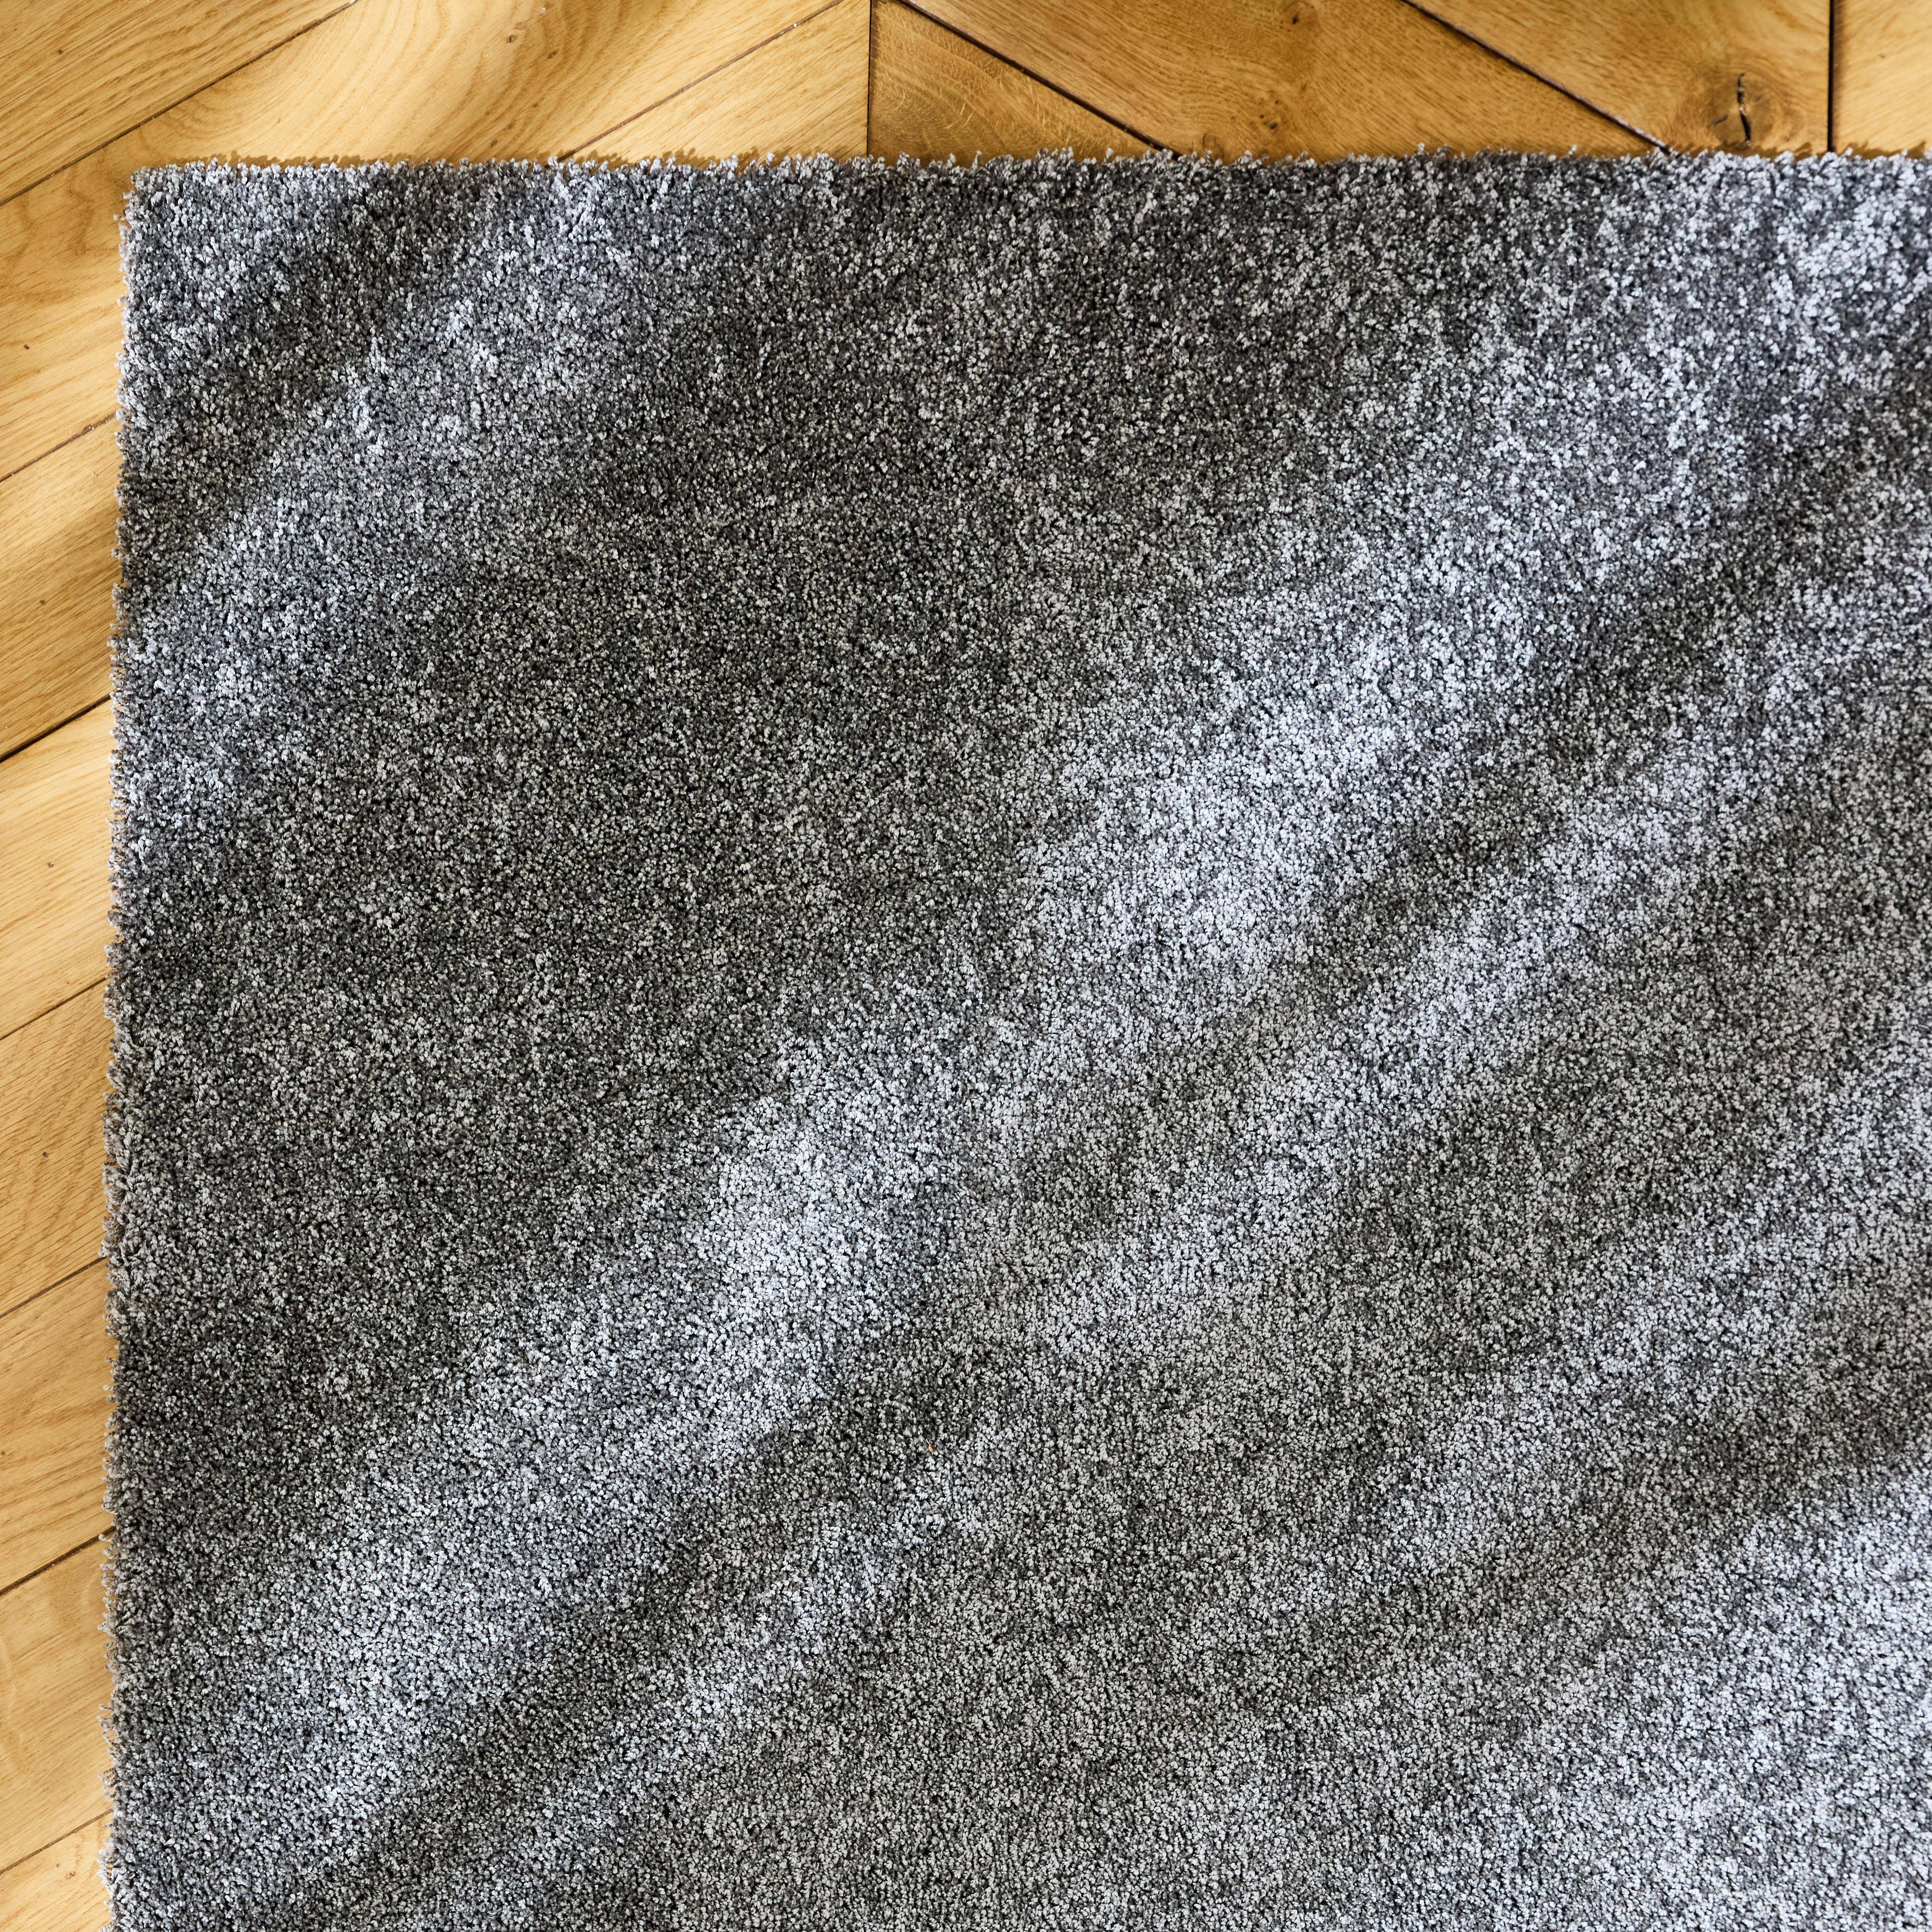 Tapis intérieur velours frisé gris anthracite, 160 x 230cm poil ras effet bouclette ,sweeek,Photo2